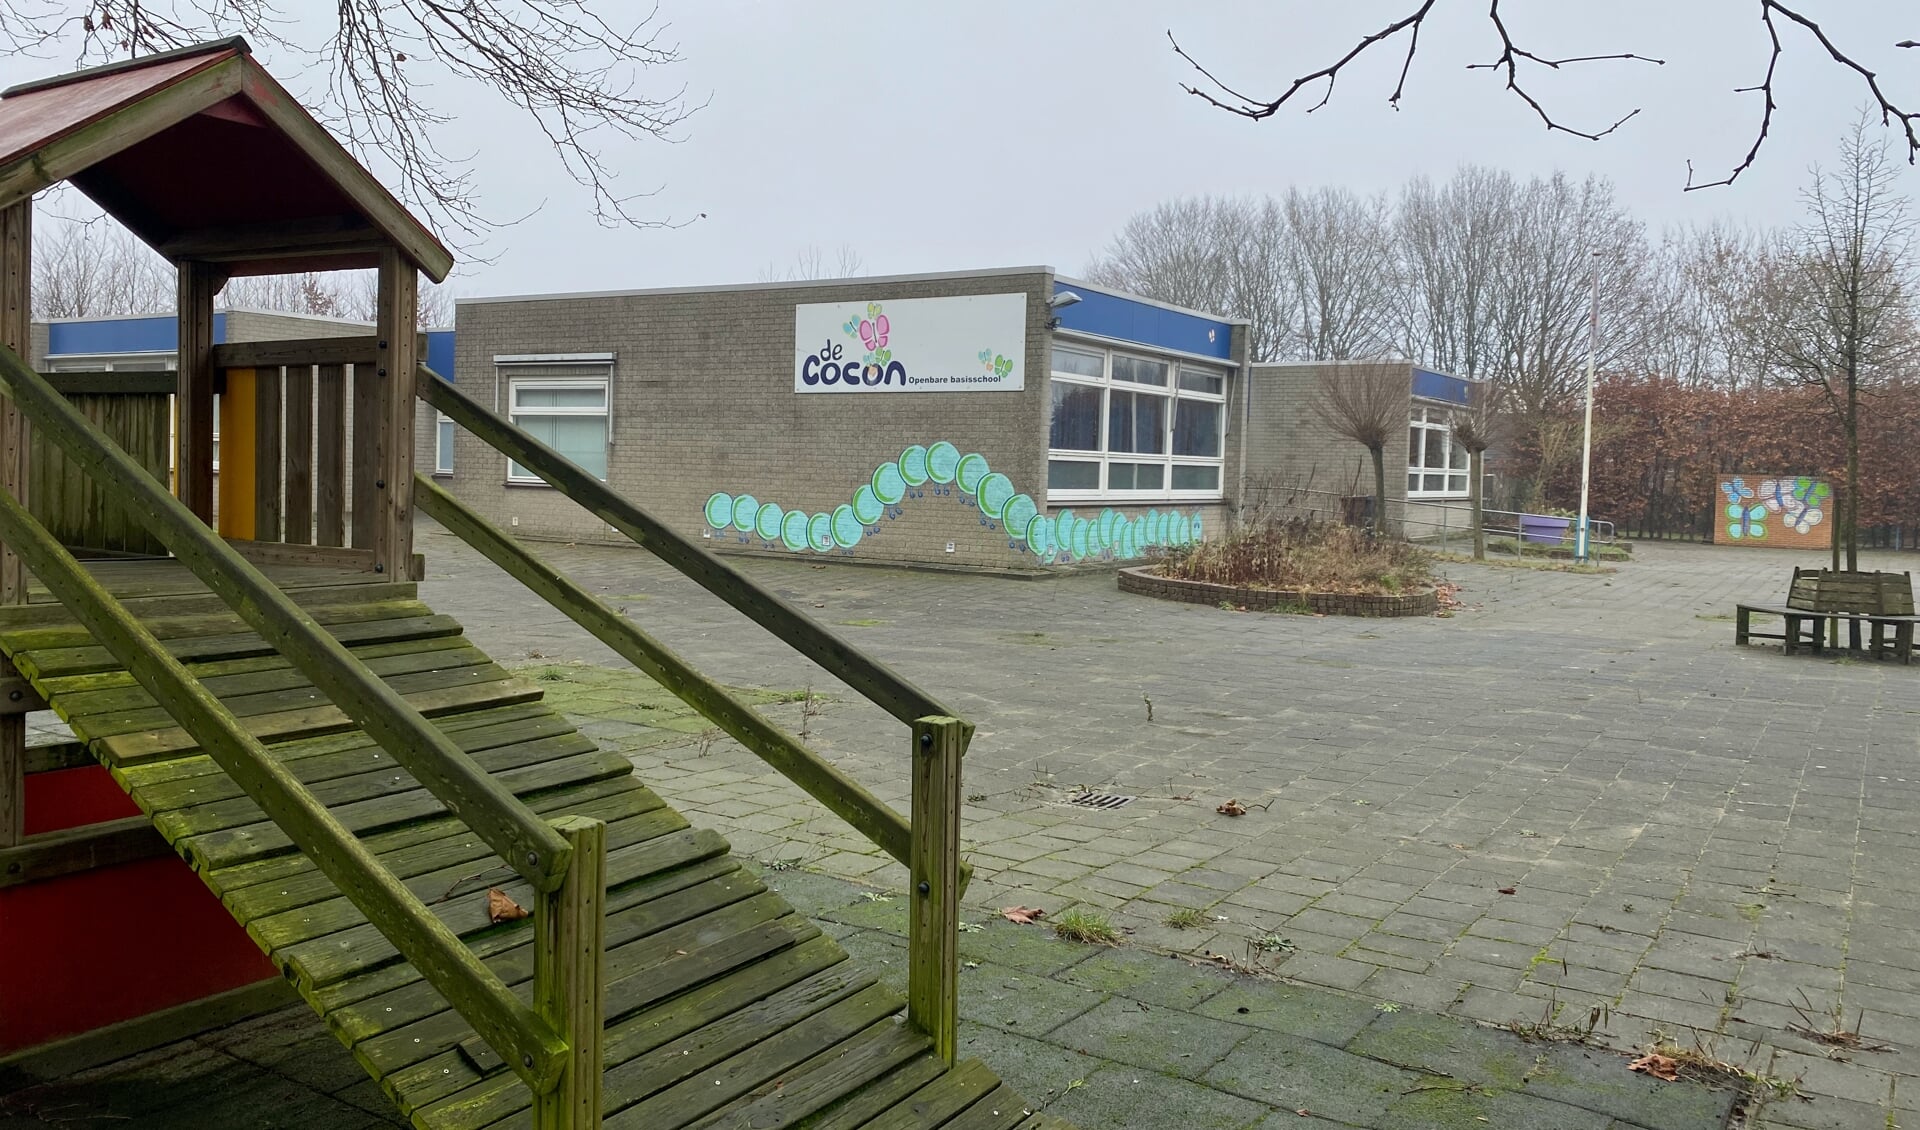 Basisschool De Cocon in Klundert sloot eerder de deuren. 